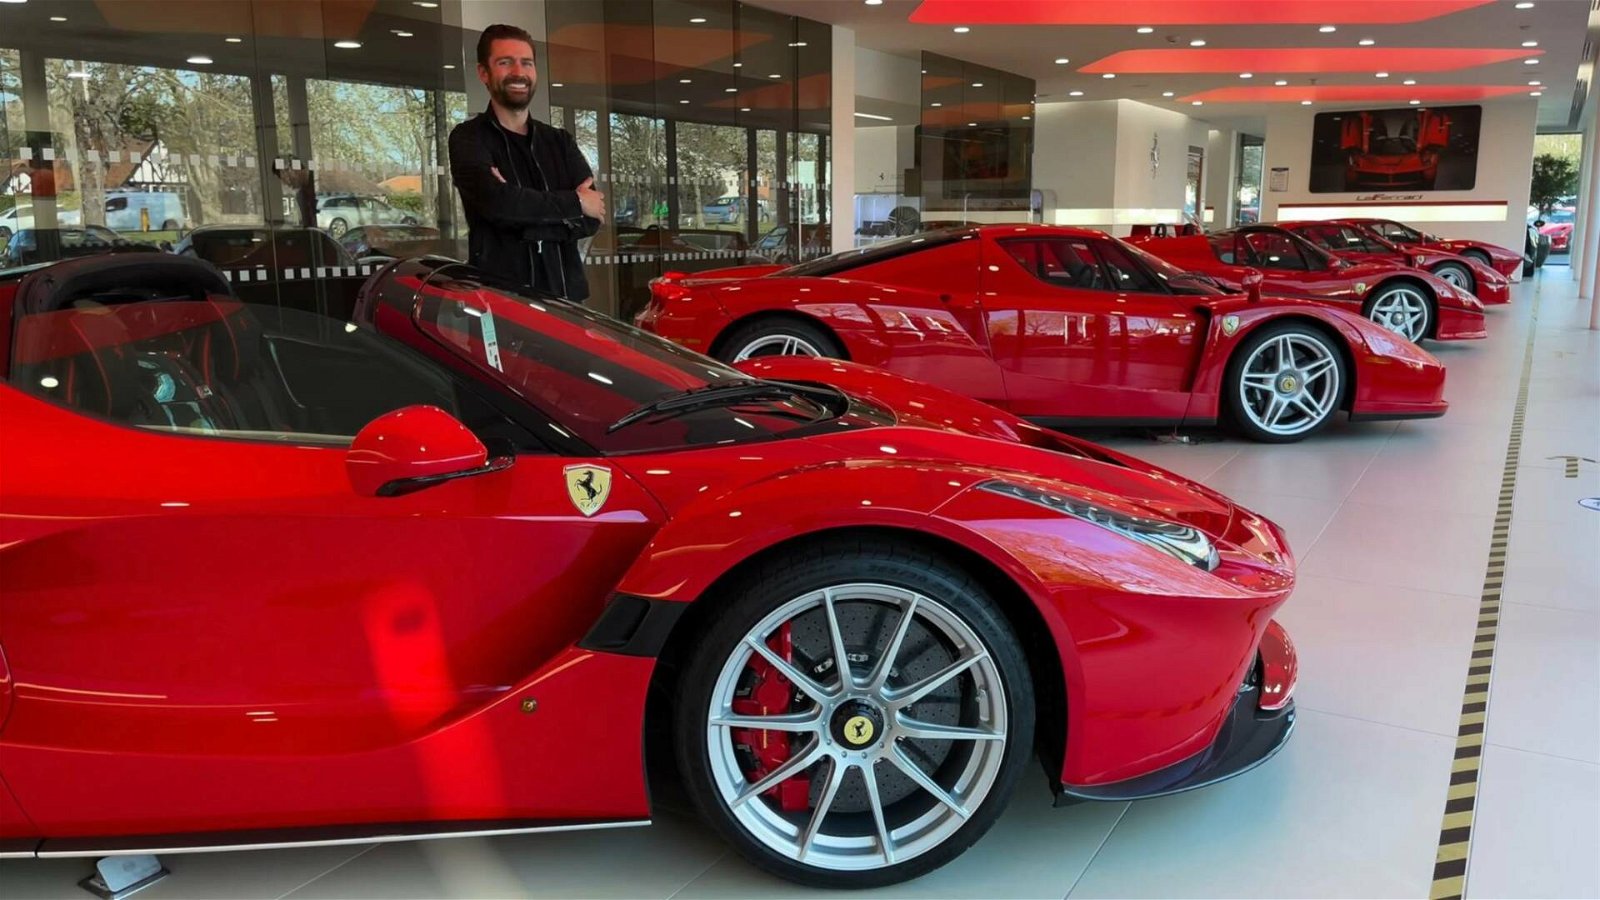 Immagine di Ferrari Big 5, il racconto di una collezione milionaria